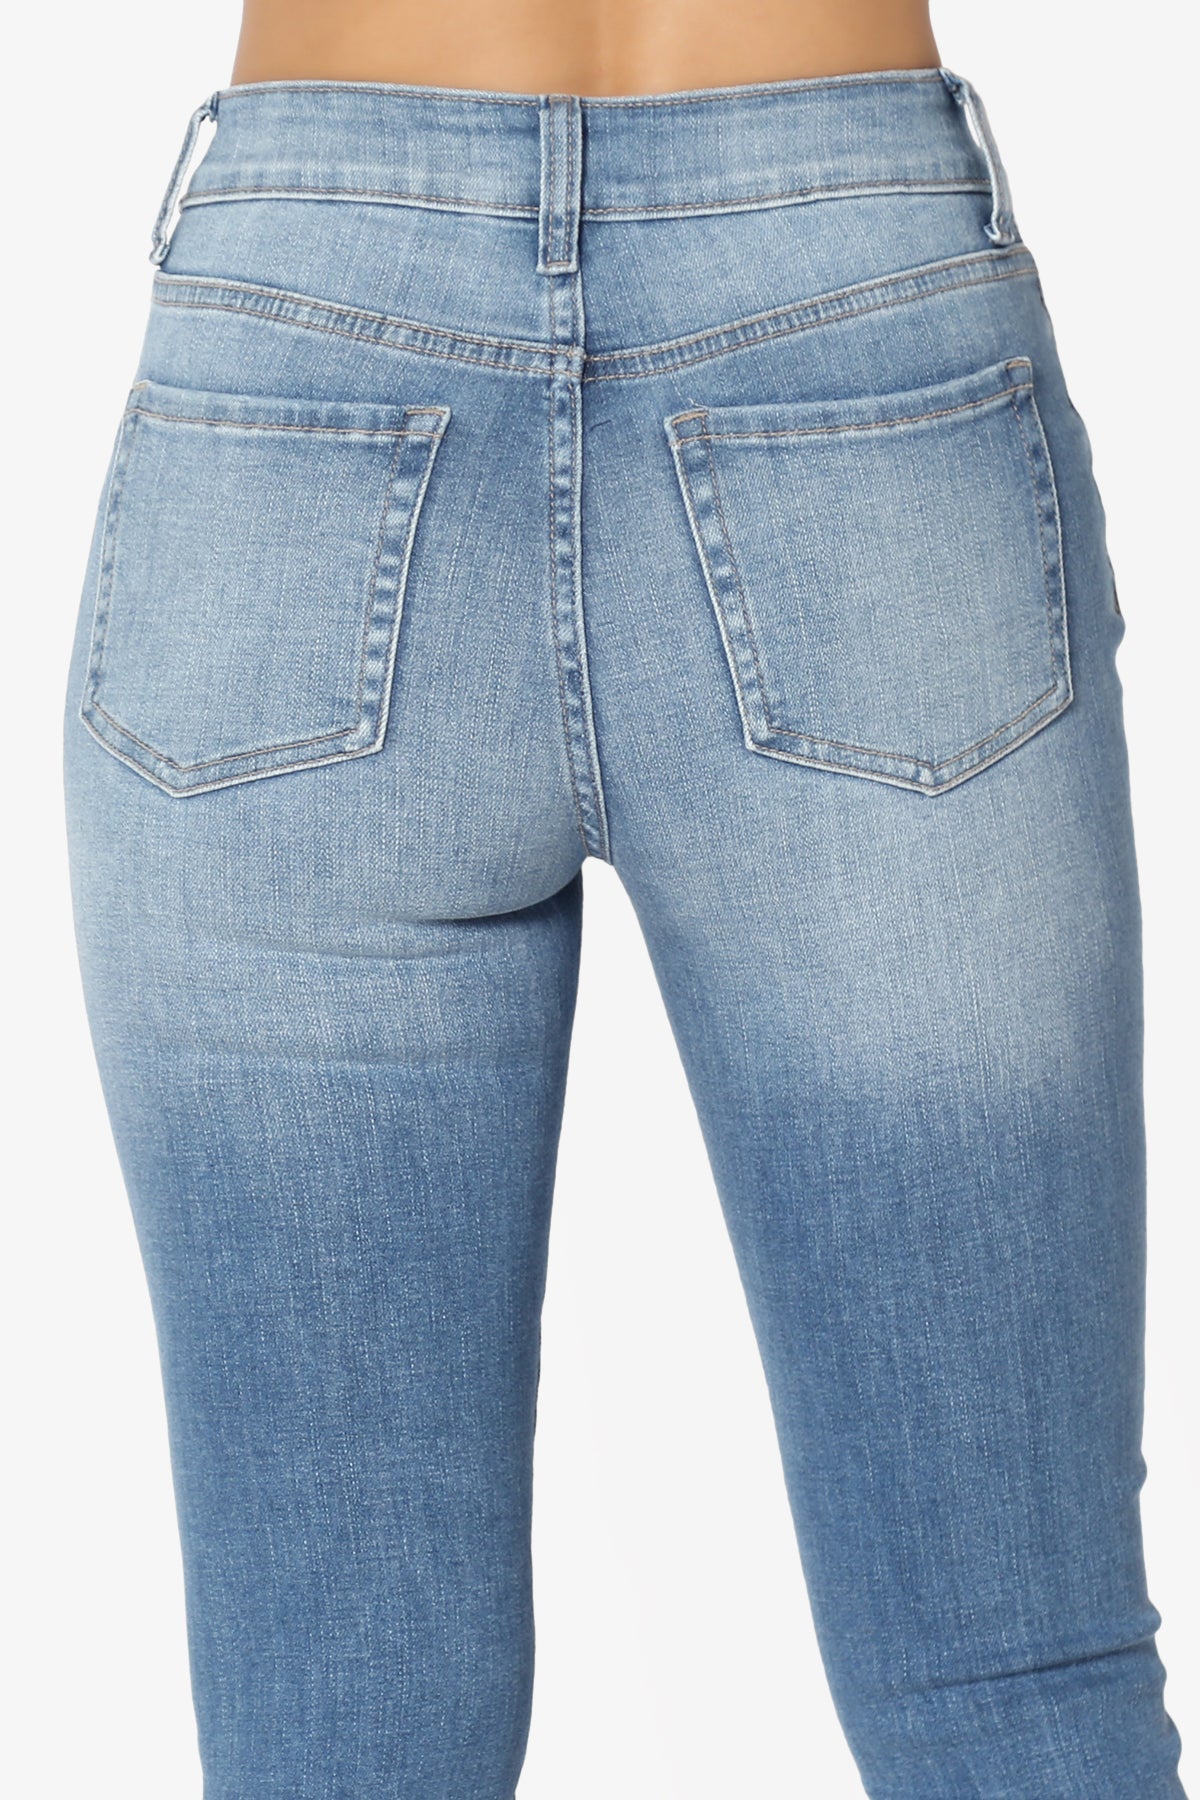 Louella High Rise Stretch Skinny Jeans in Medium